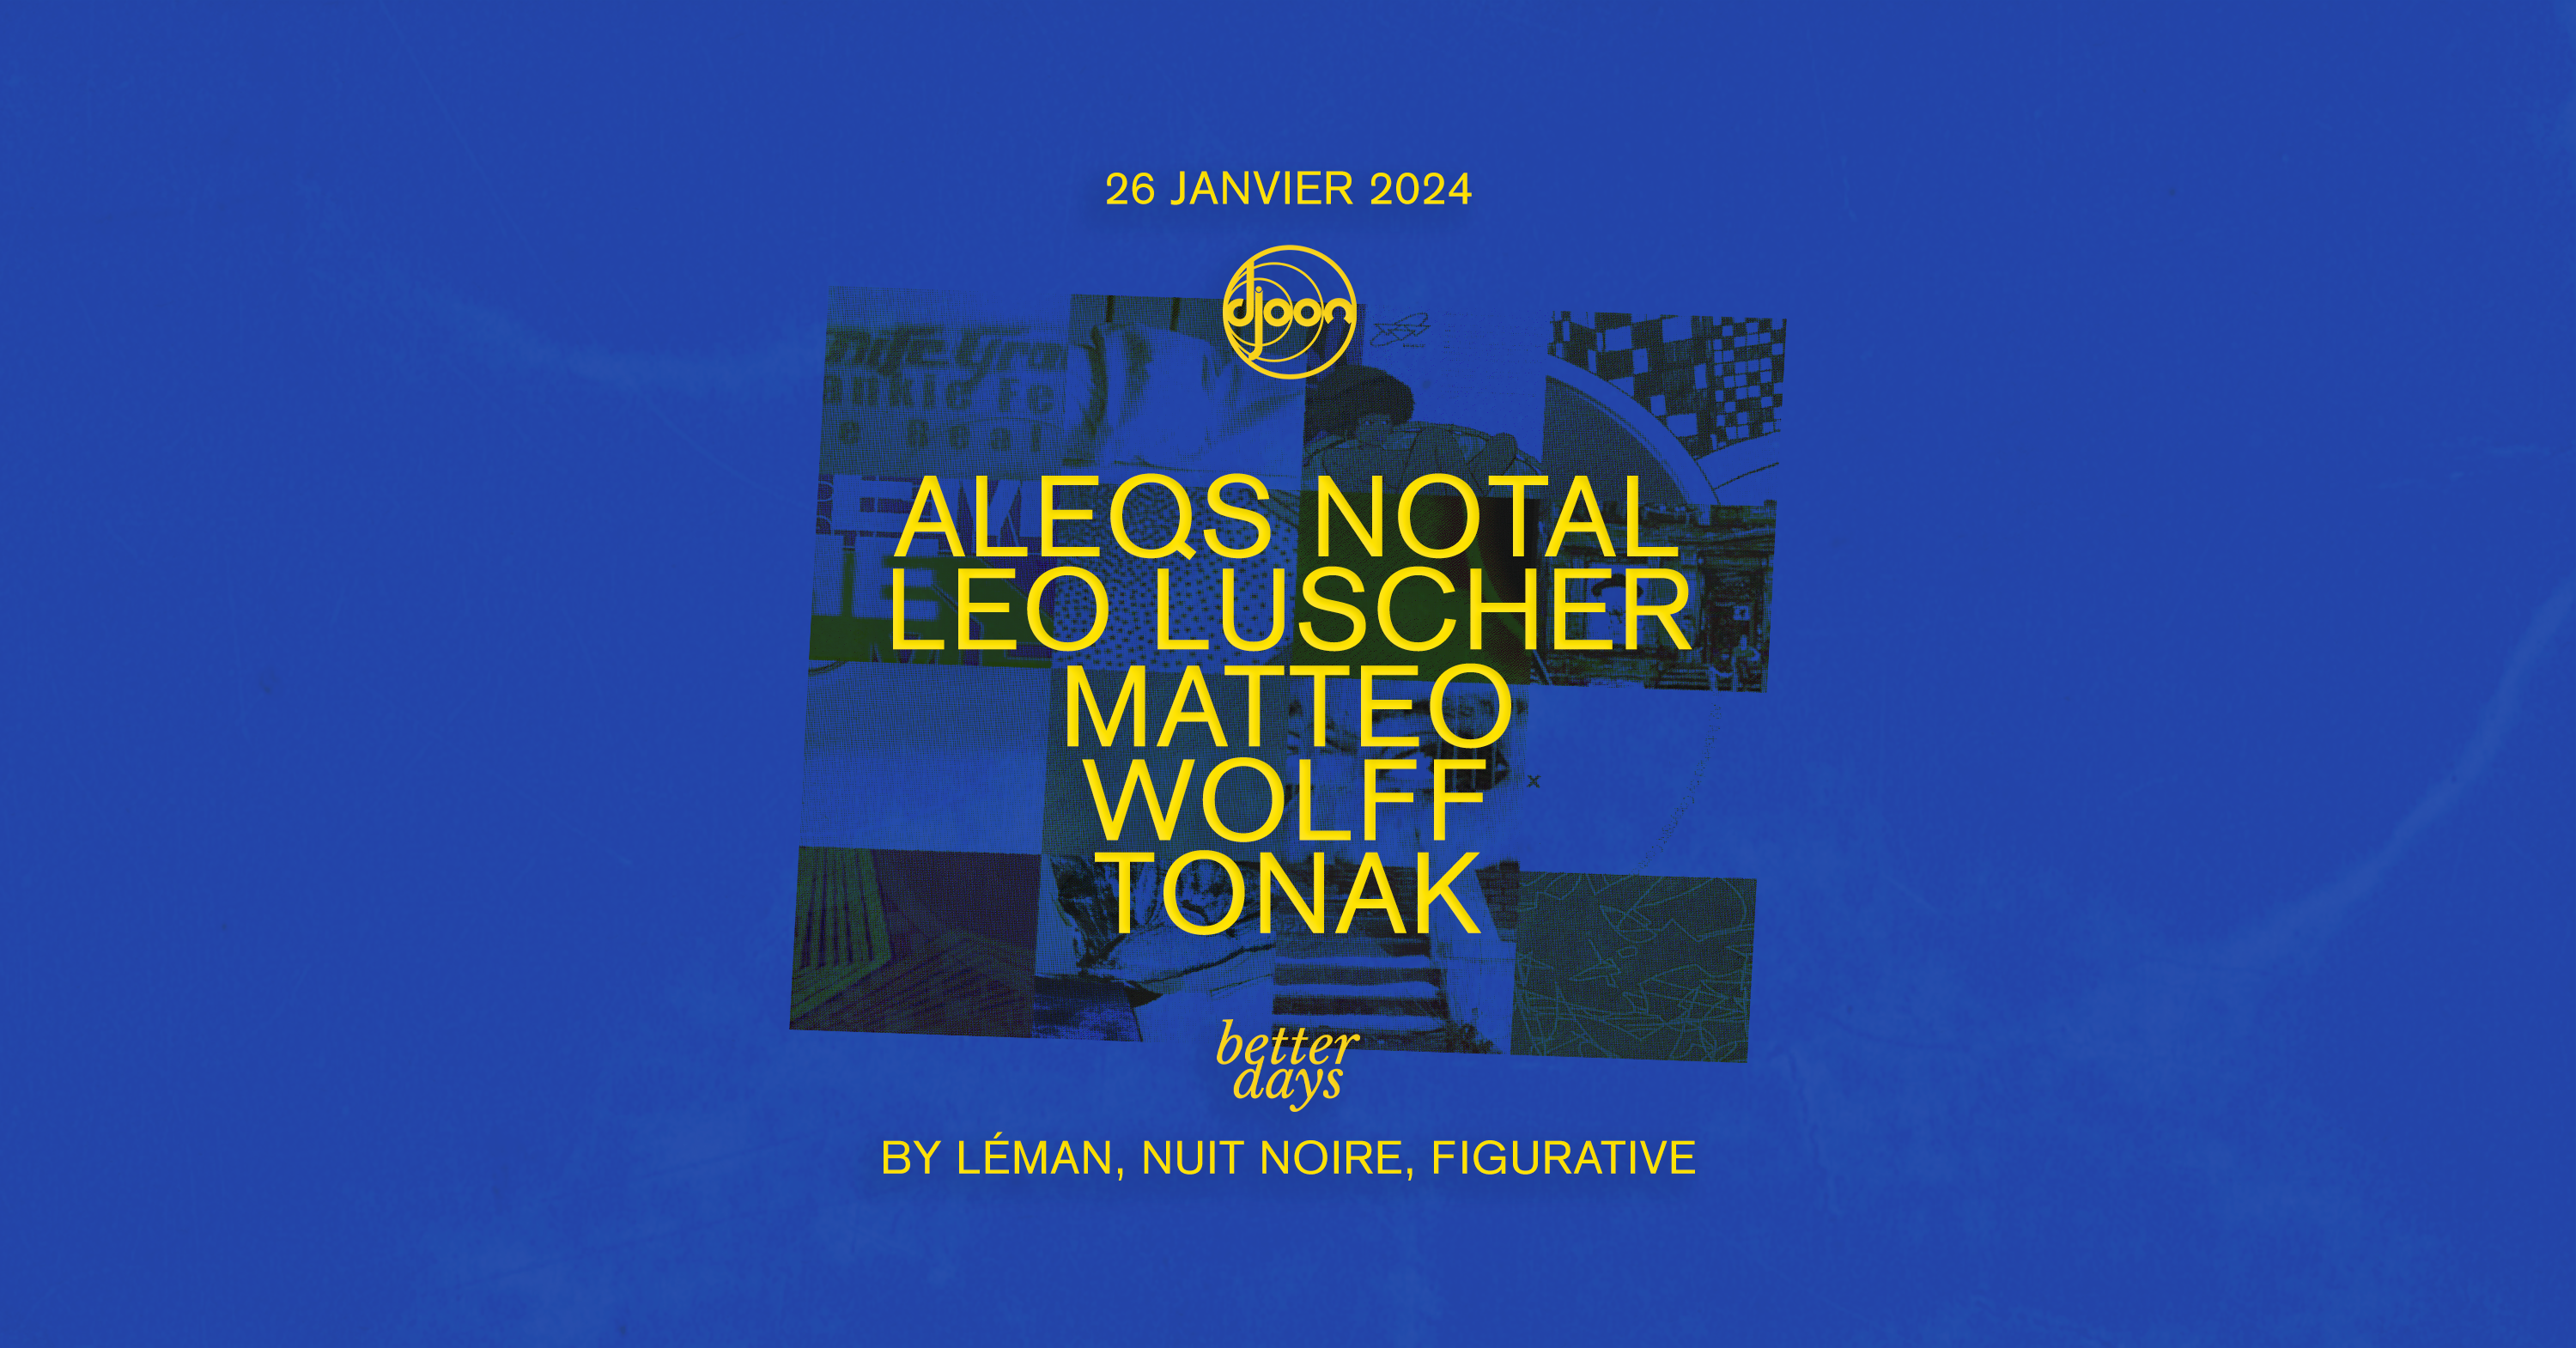 Better Days invite Aleqs Notals - フライヤー裏